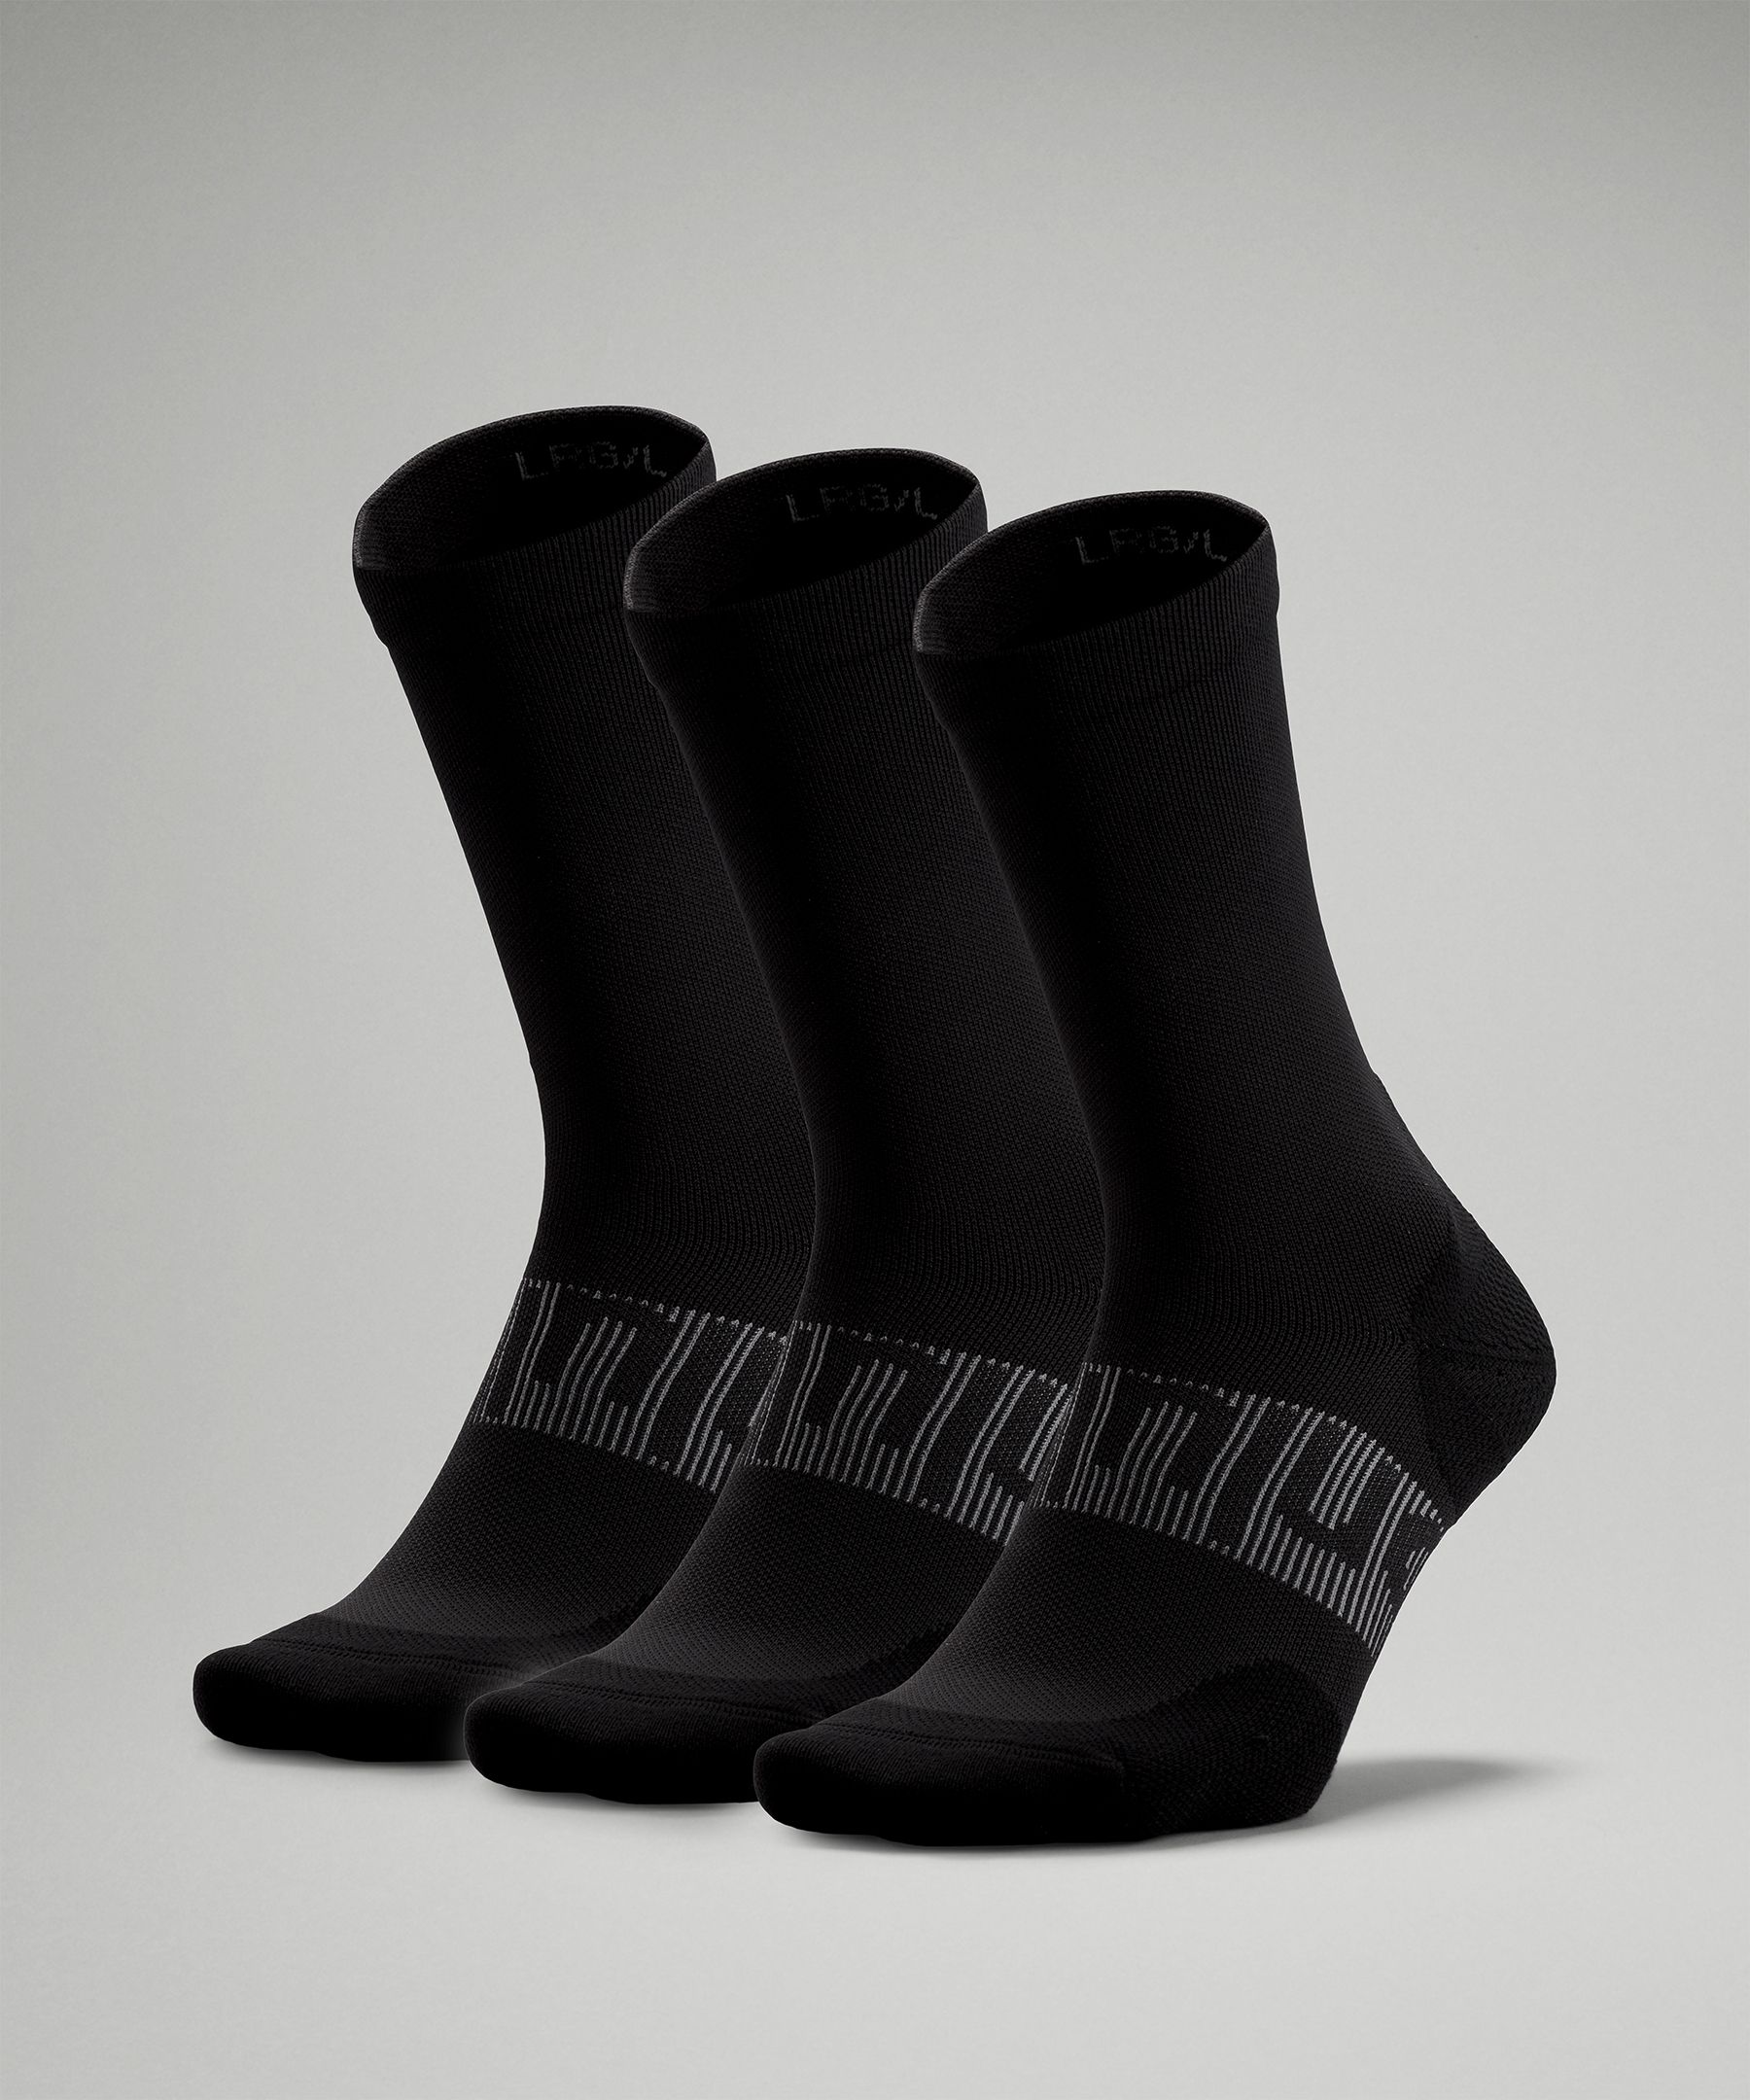 Lululemon Power Stride Crew Socks 3 Pack